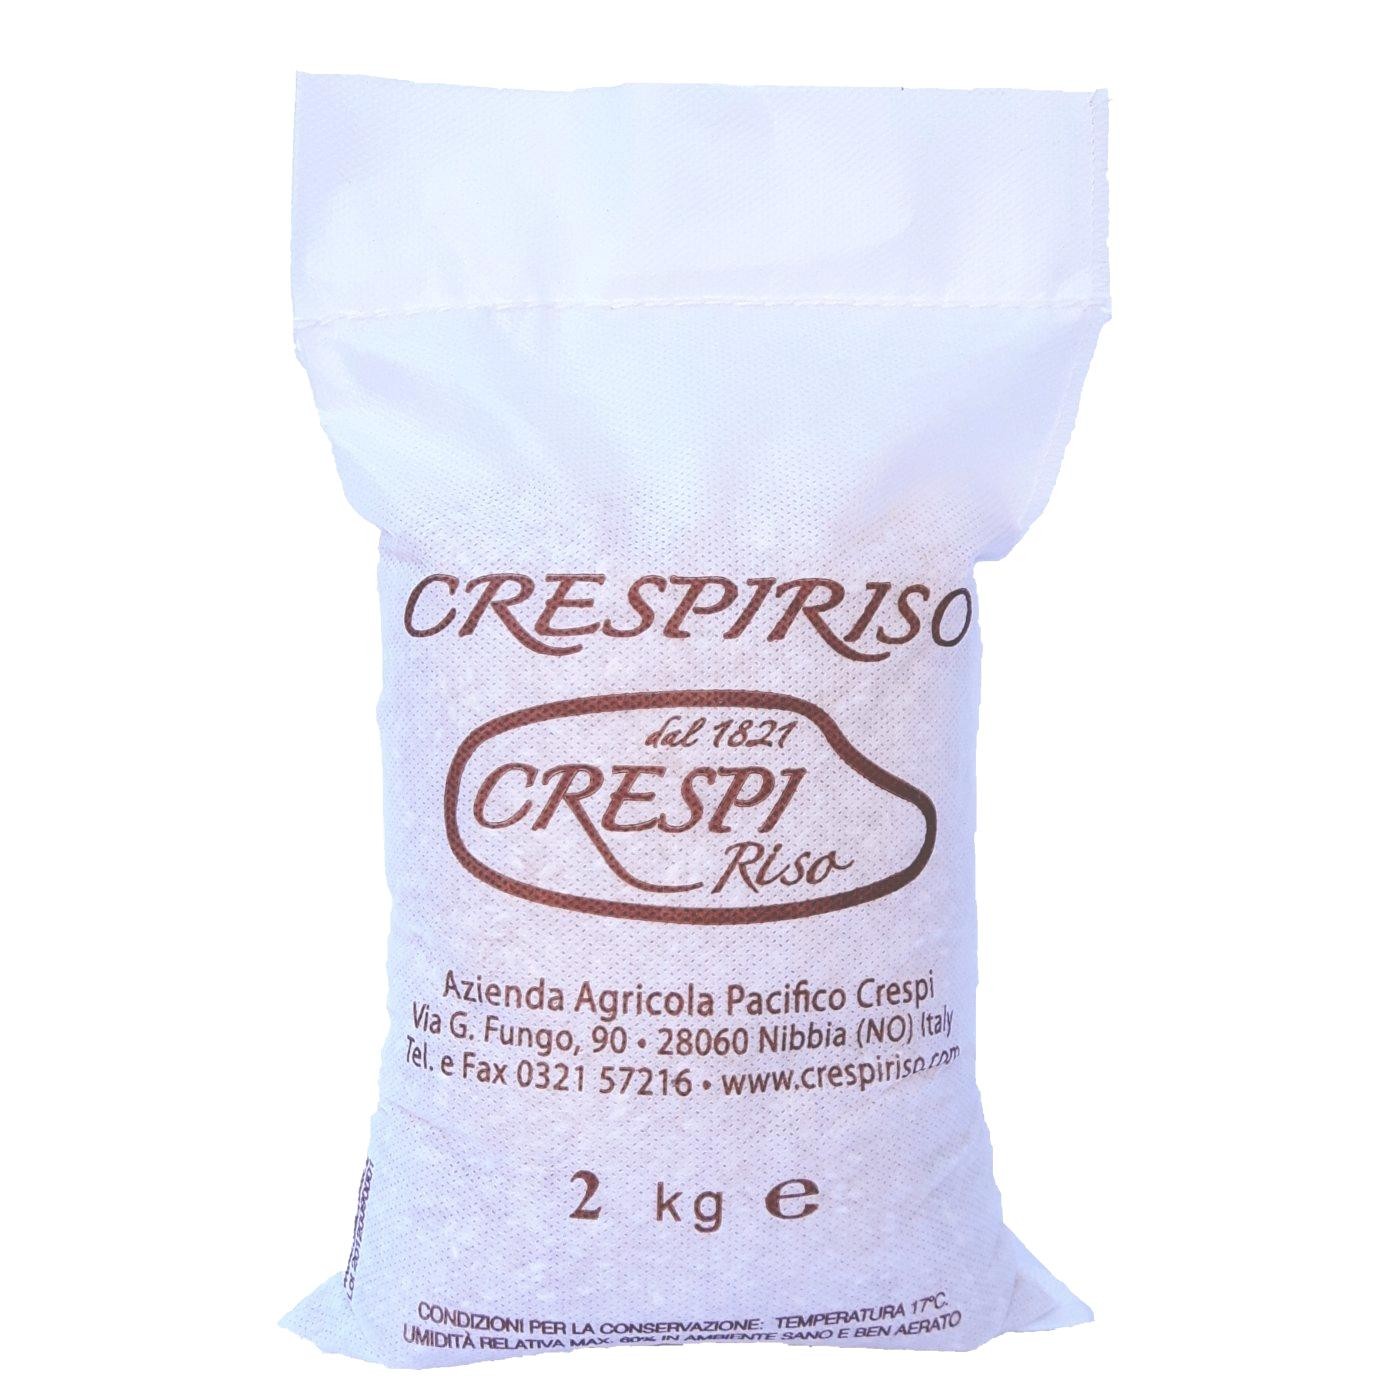 Riso Arborio crespiriso 2Kg confezione classica crespiriso in cotone o tessuto non tessuto (tnt)